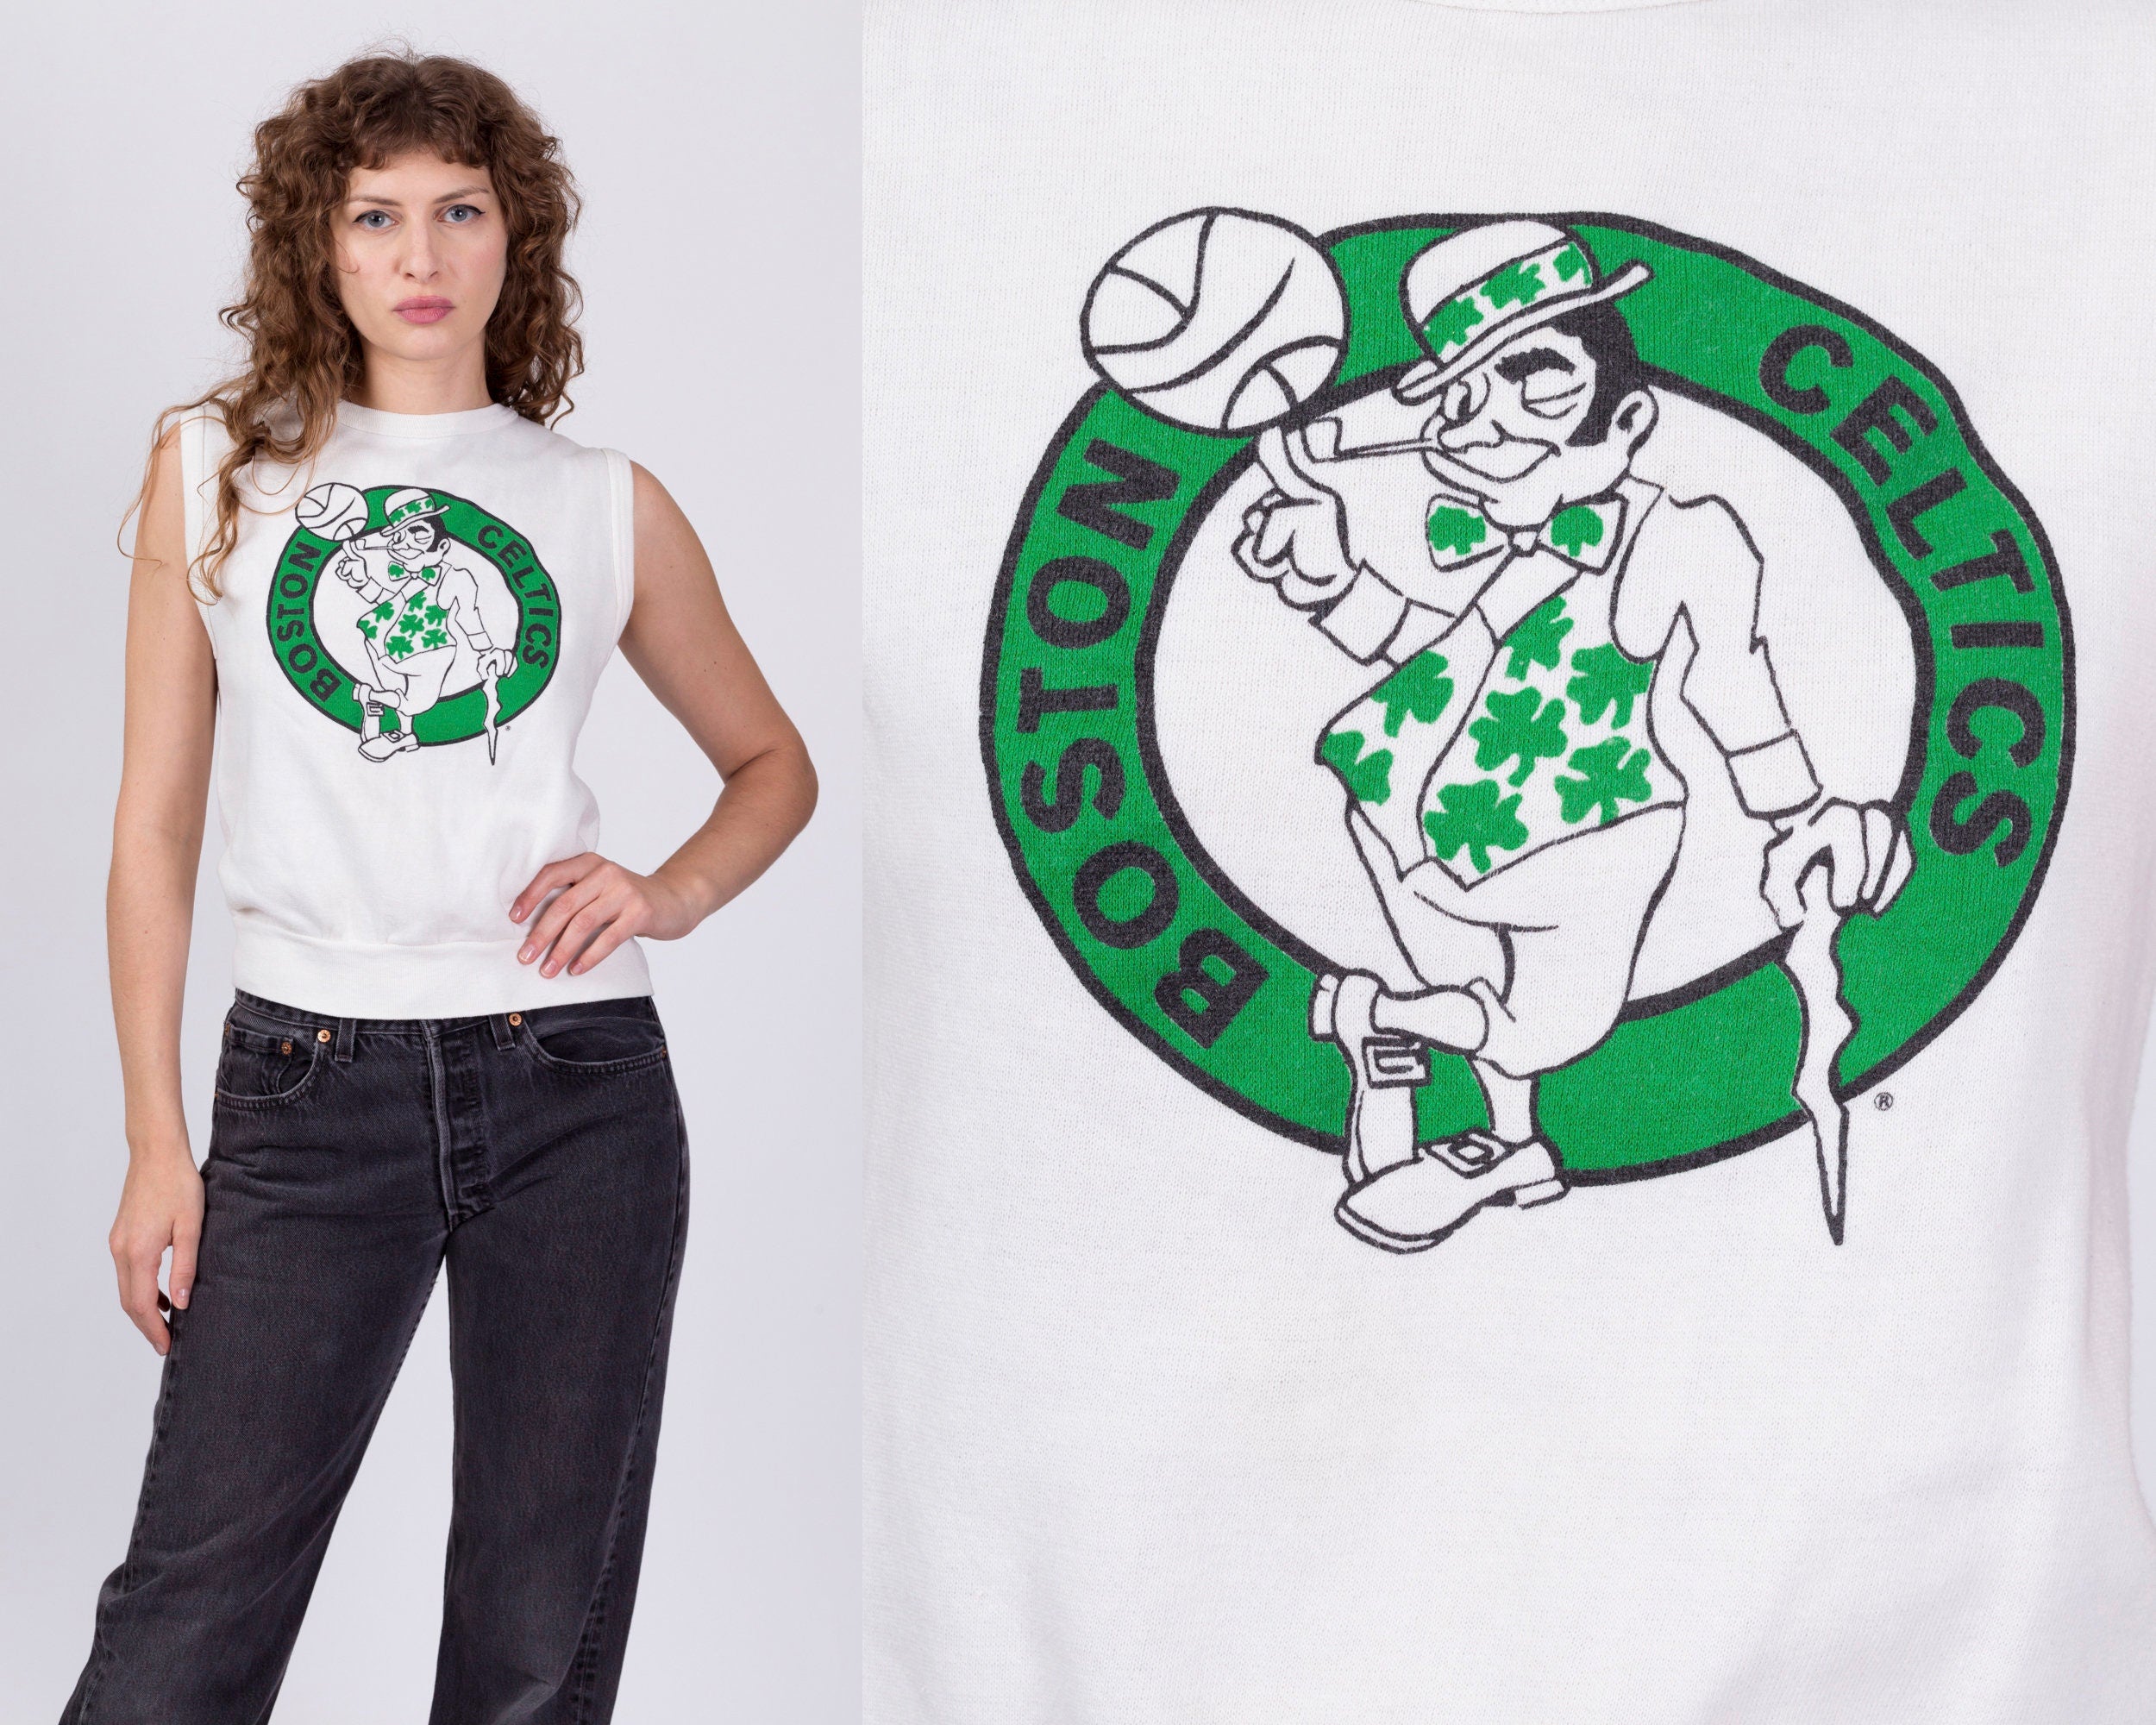 Boston Celtics Retro 